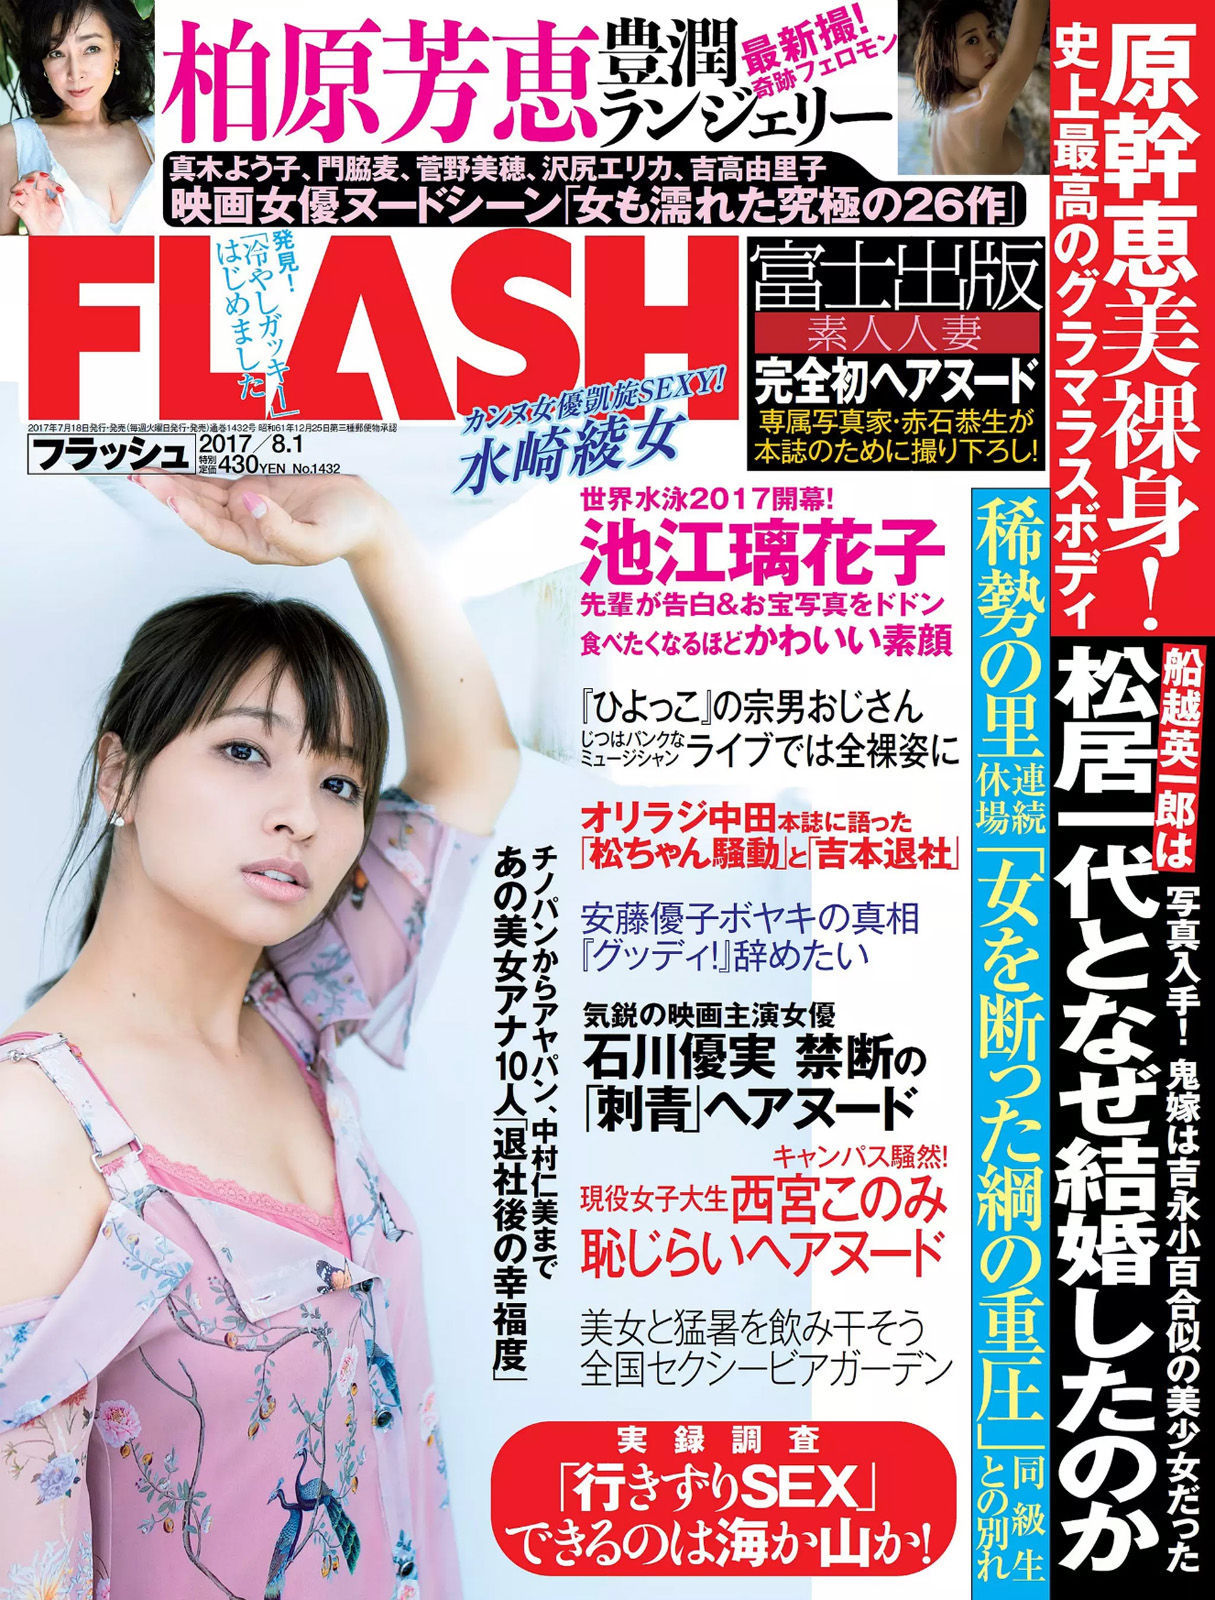 [FLASH]杂志:水崎绫女高品质绝版网图珍藏版(12P)